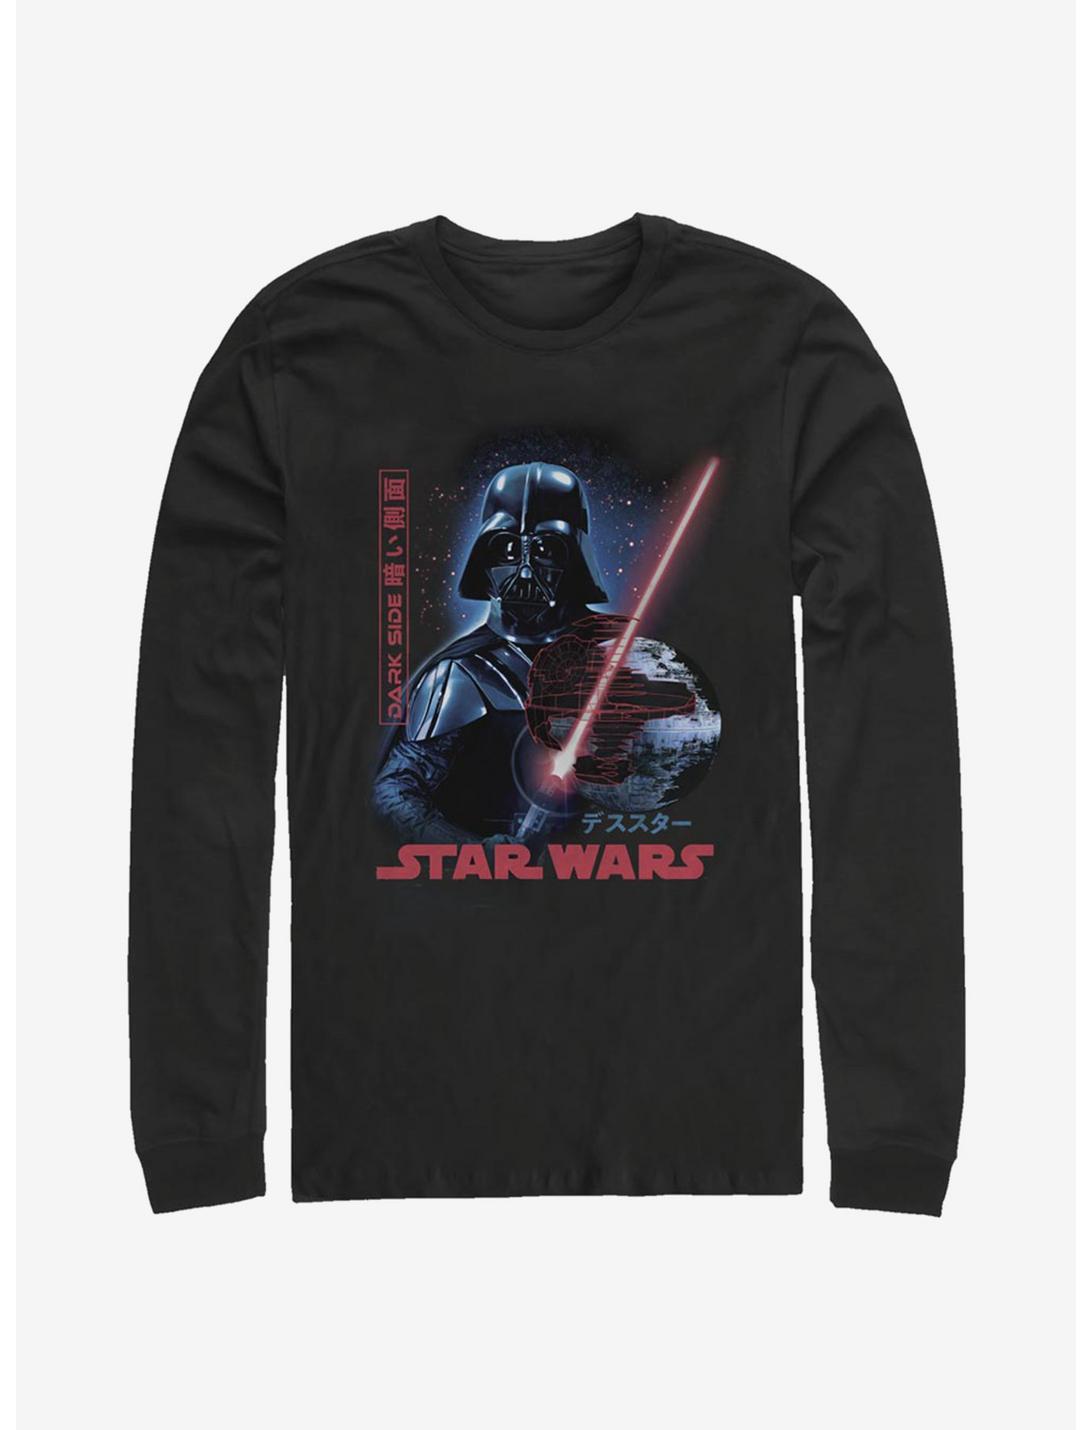 Star Wars Darth Vader Empire Japanese Text Long-Sleeve T-Shirt, BLACK, hi-res